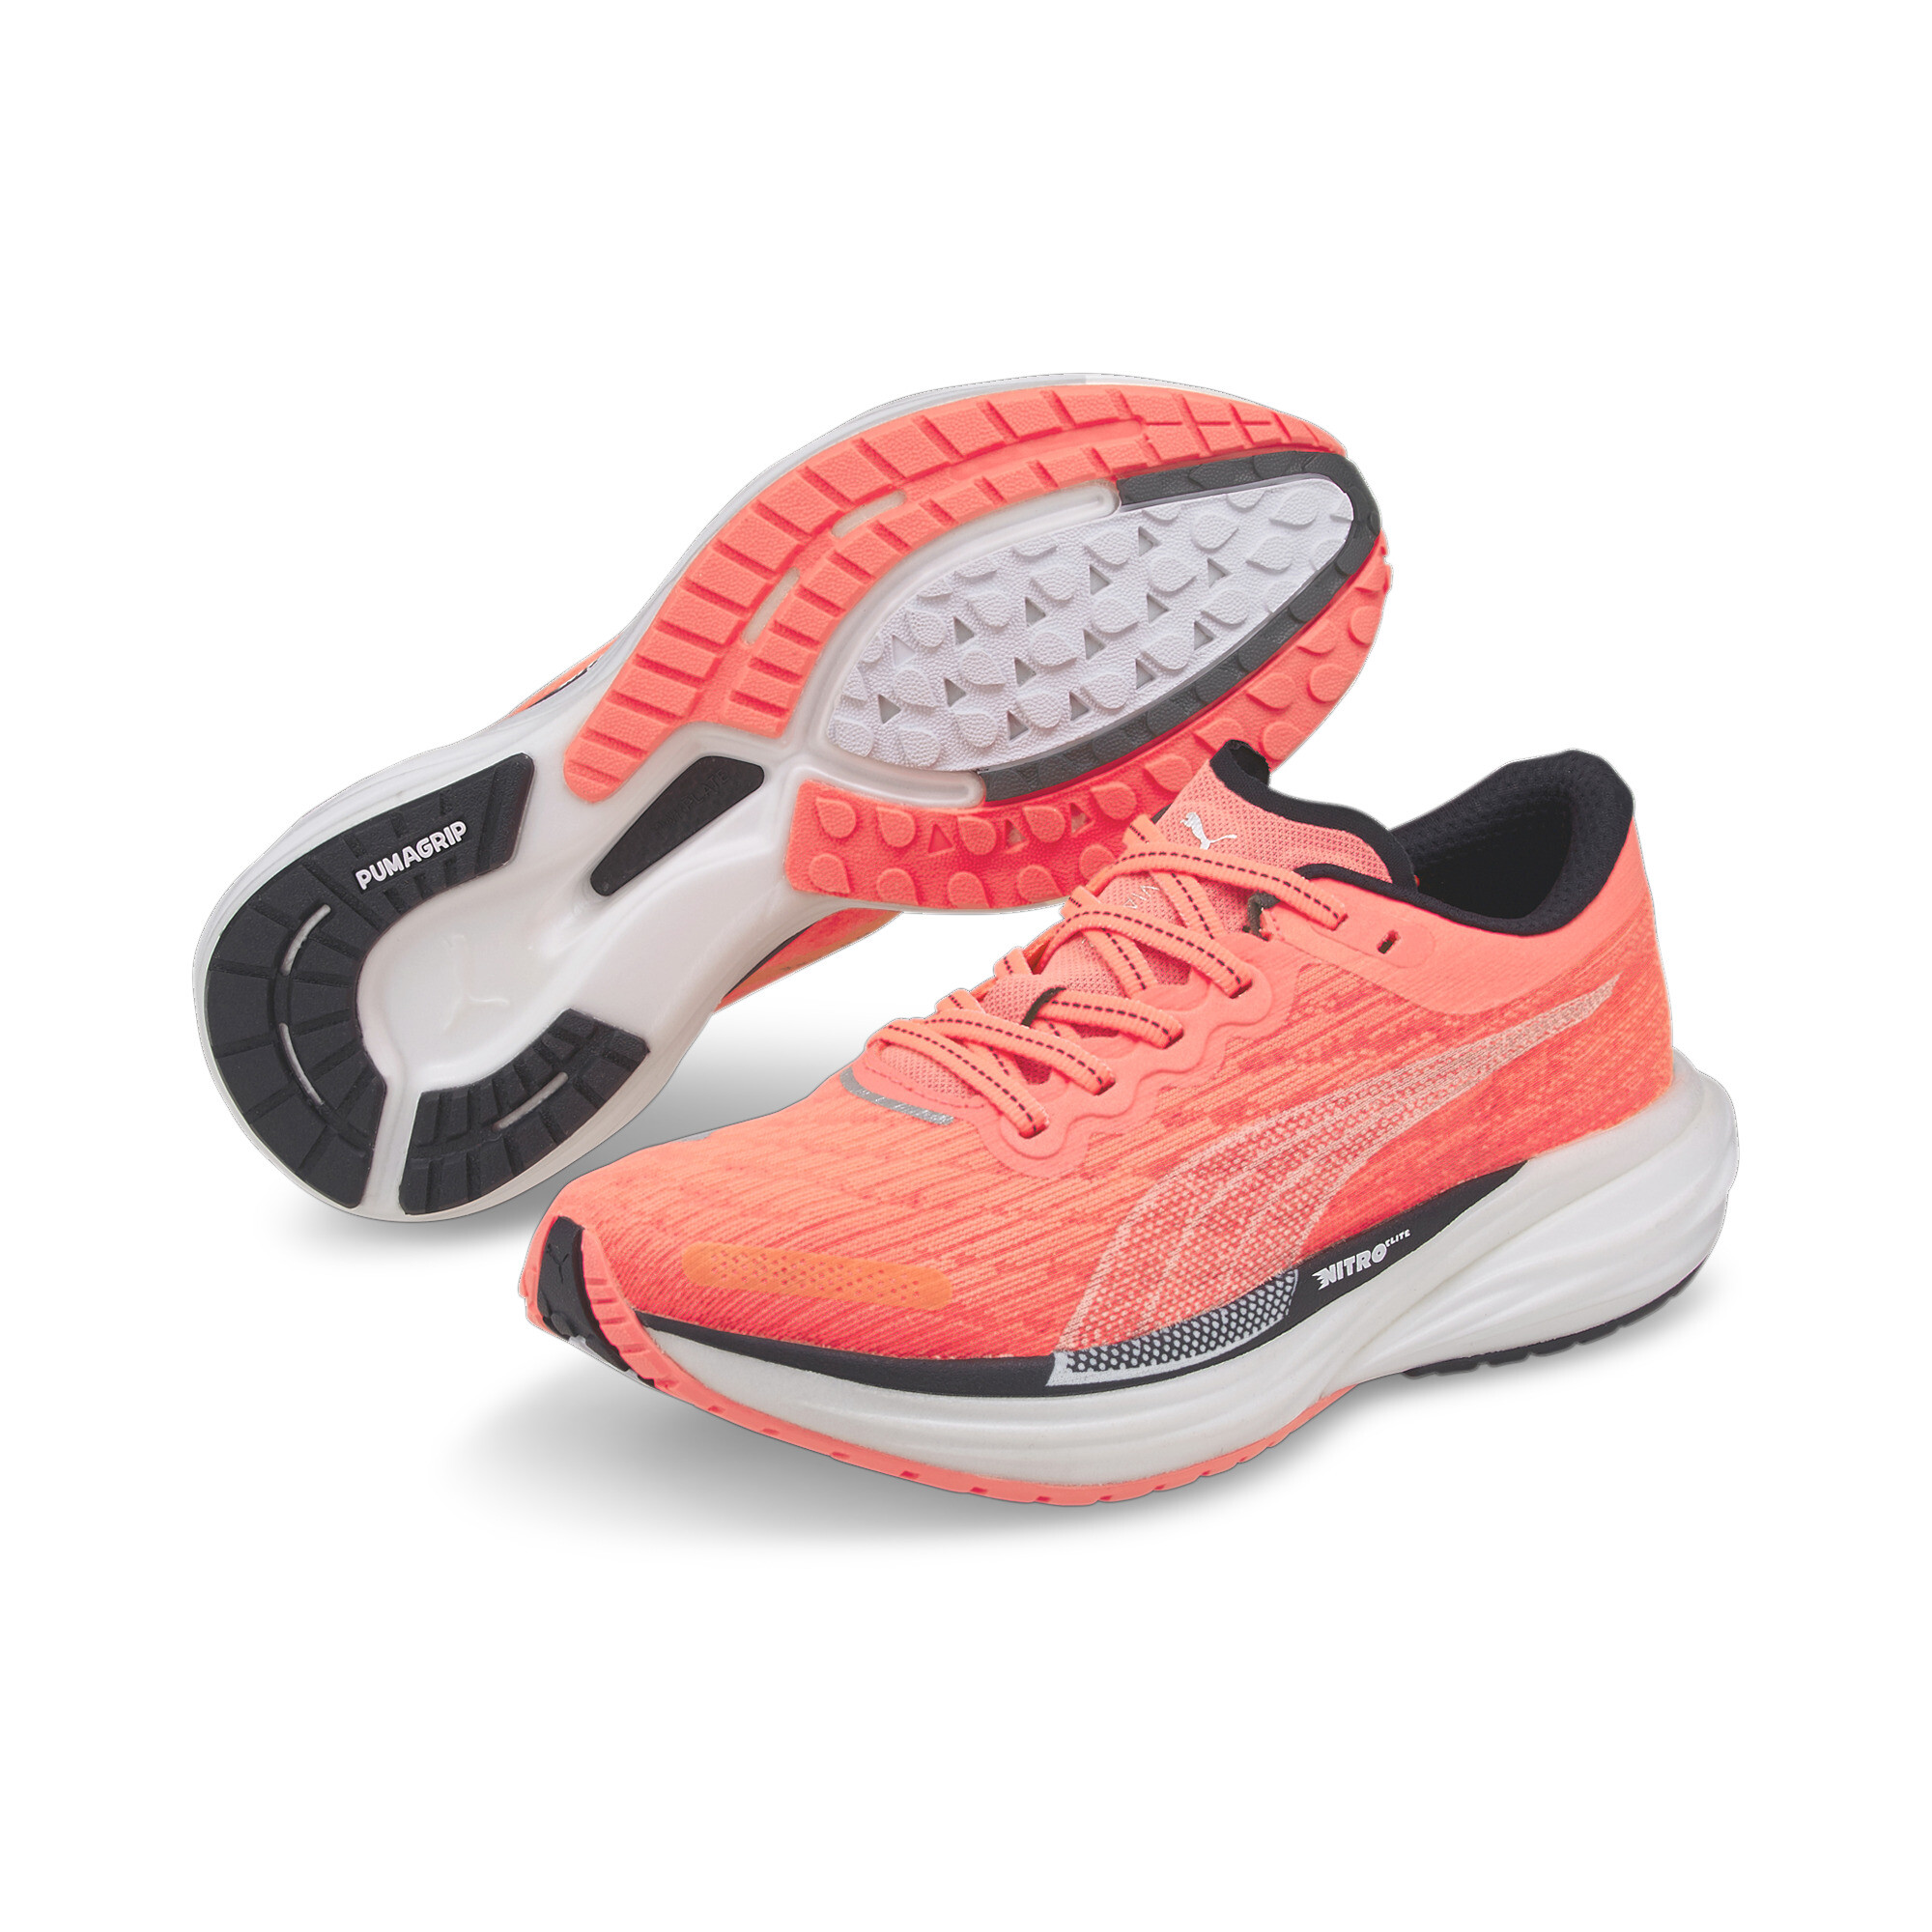 Women's PUMA Deviate NITROâ¢ 2 Running Shoes In Pink, Size EU 38